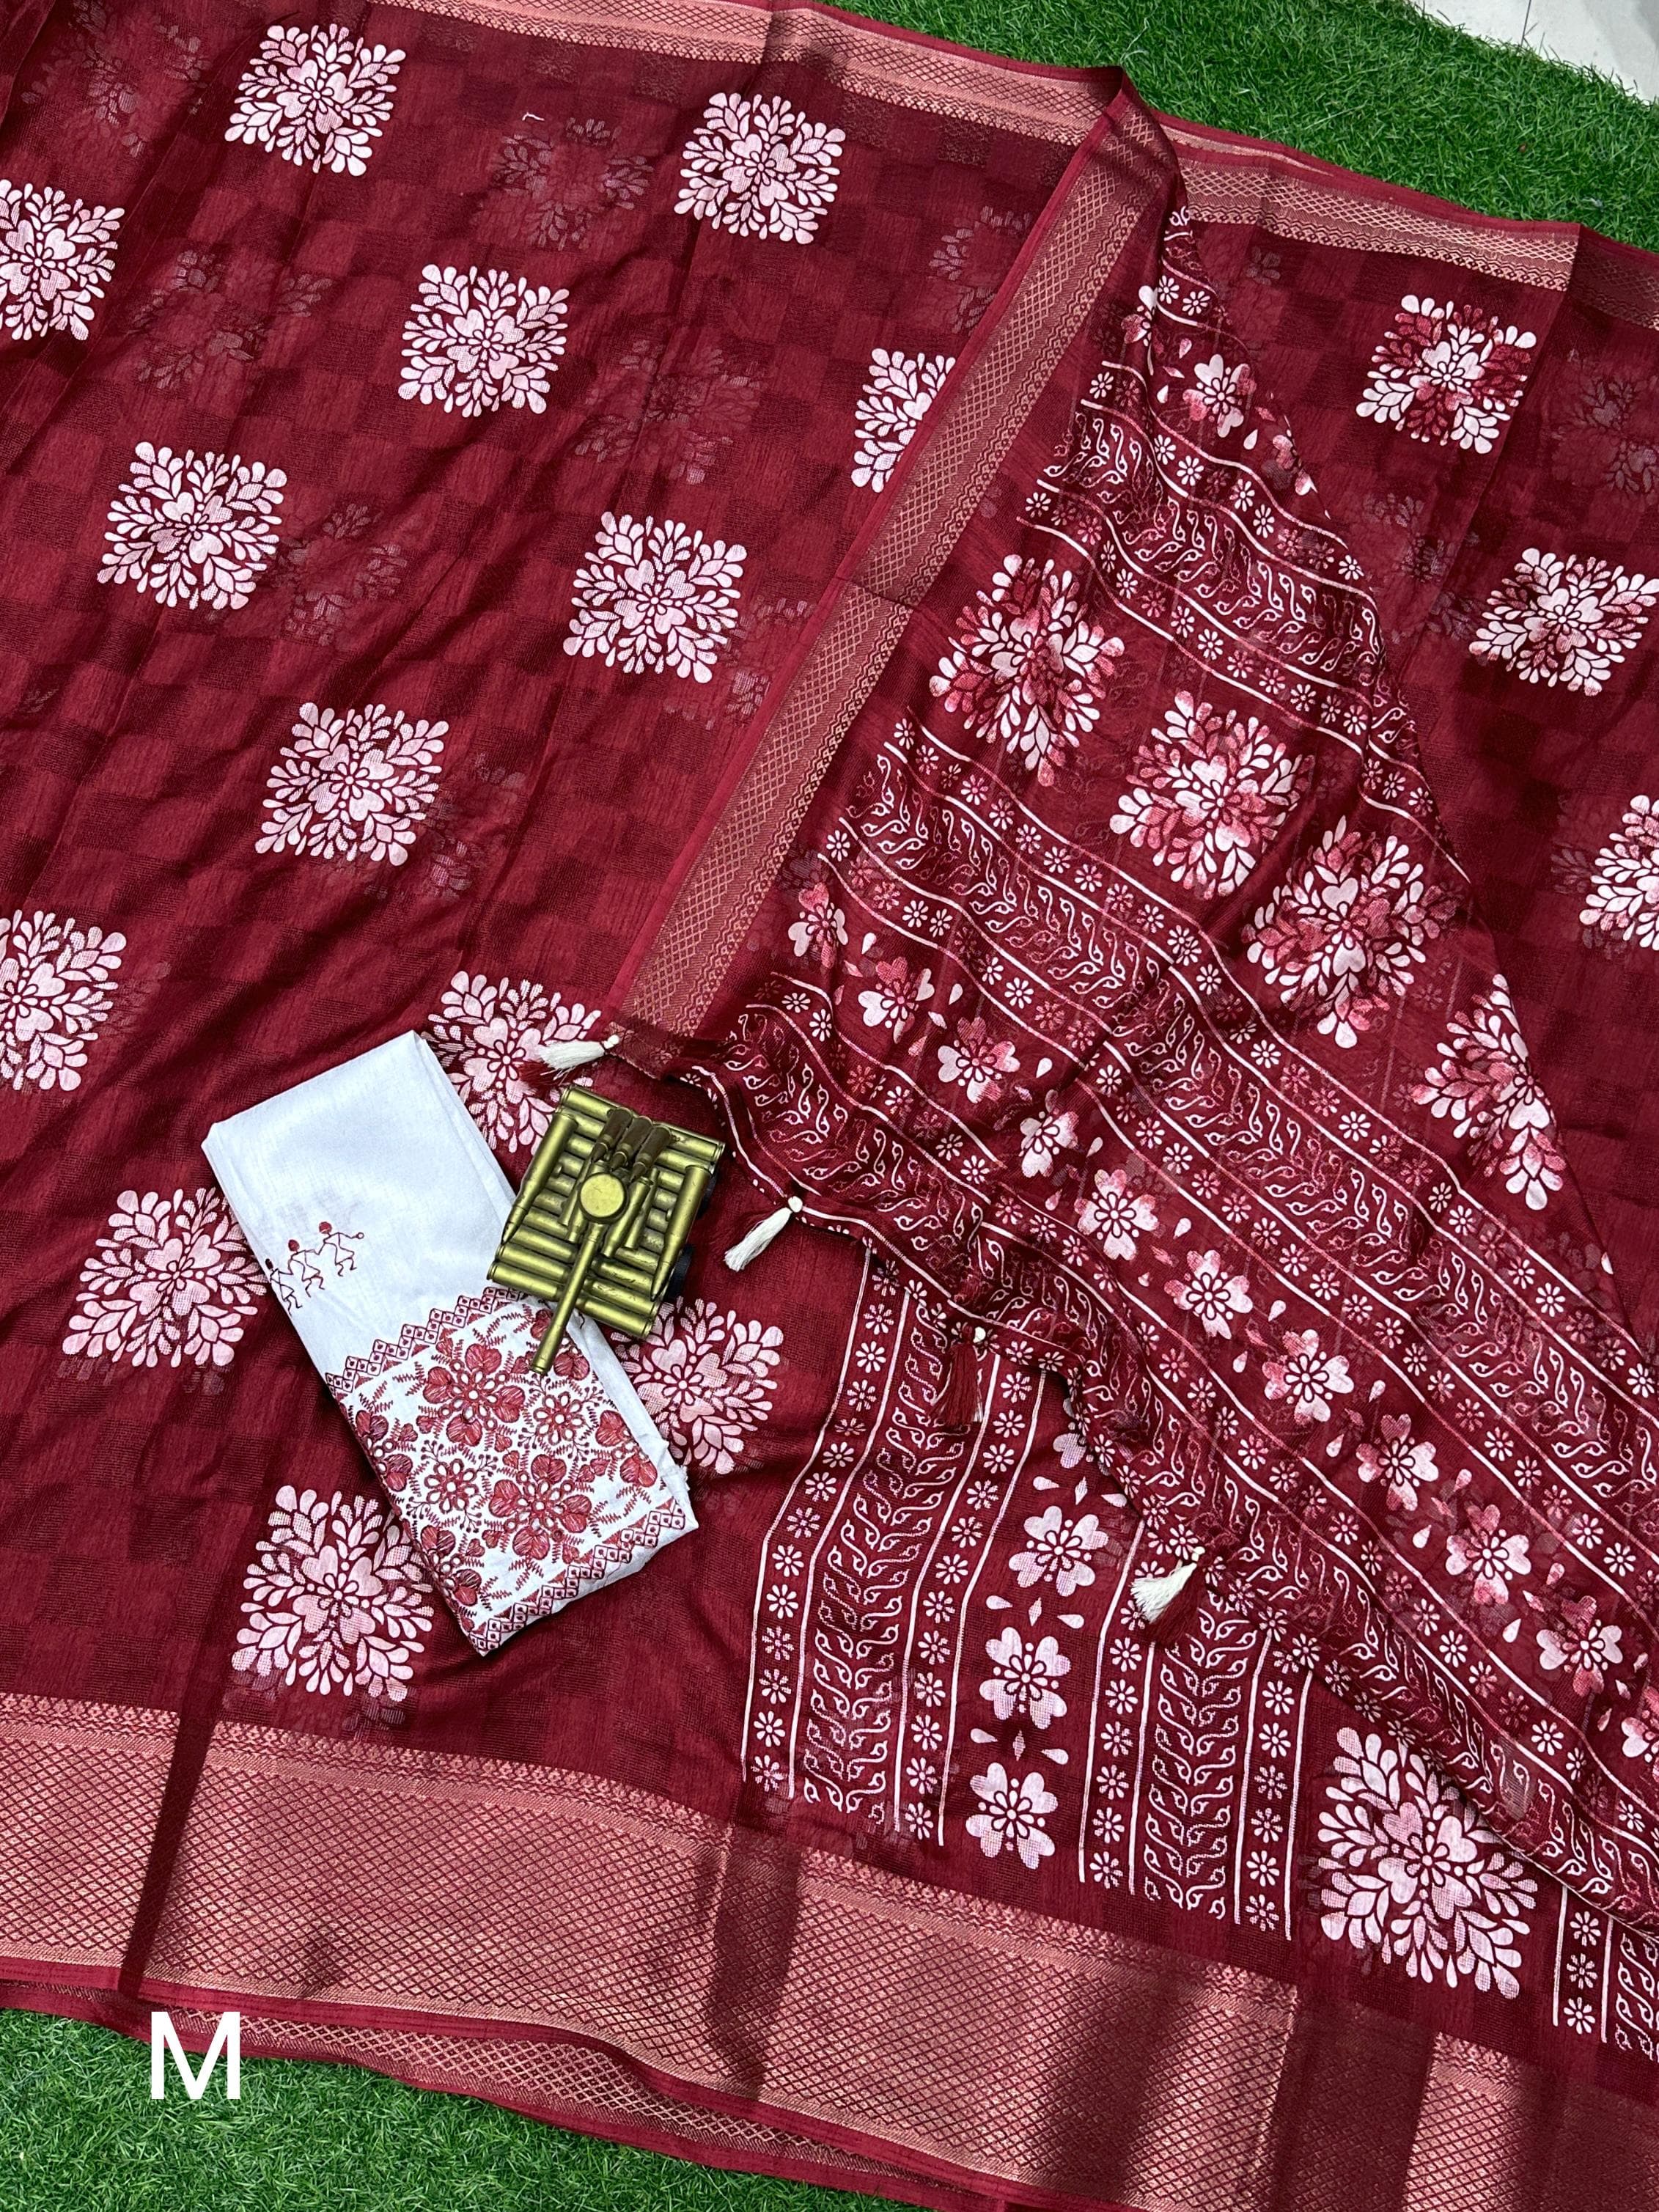 Muslin mono-cotton with self jacquard saree 22957N